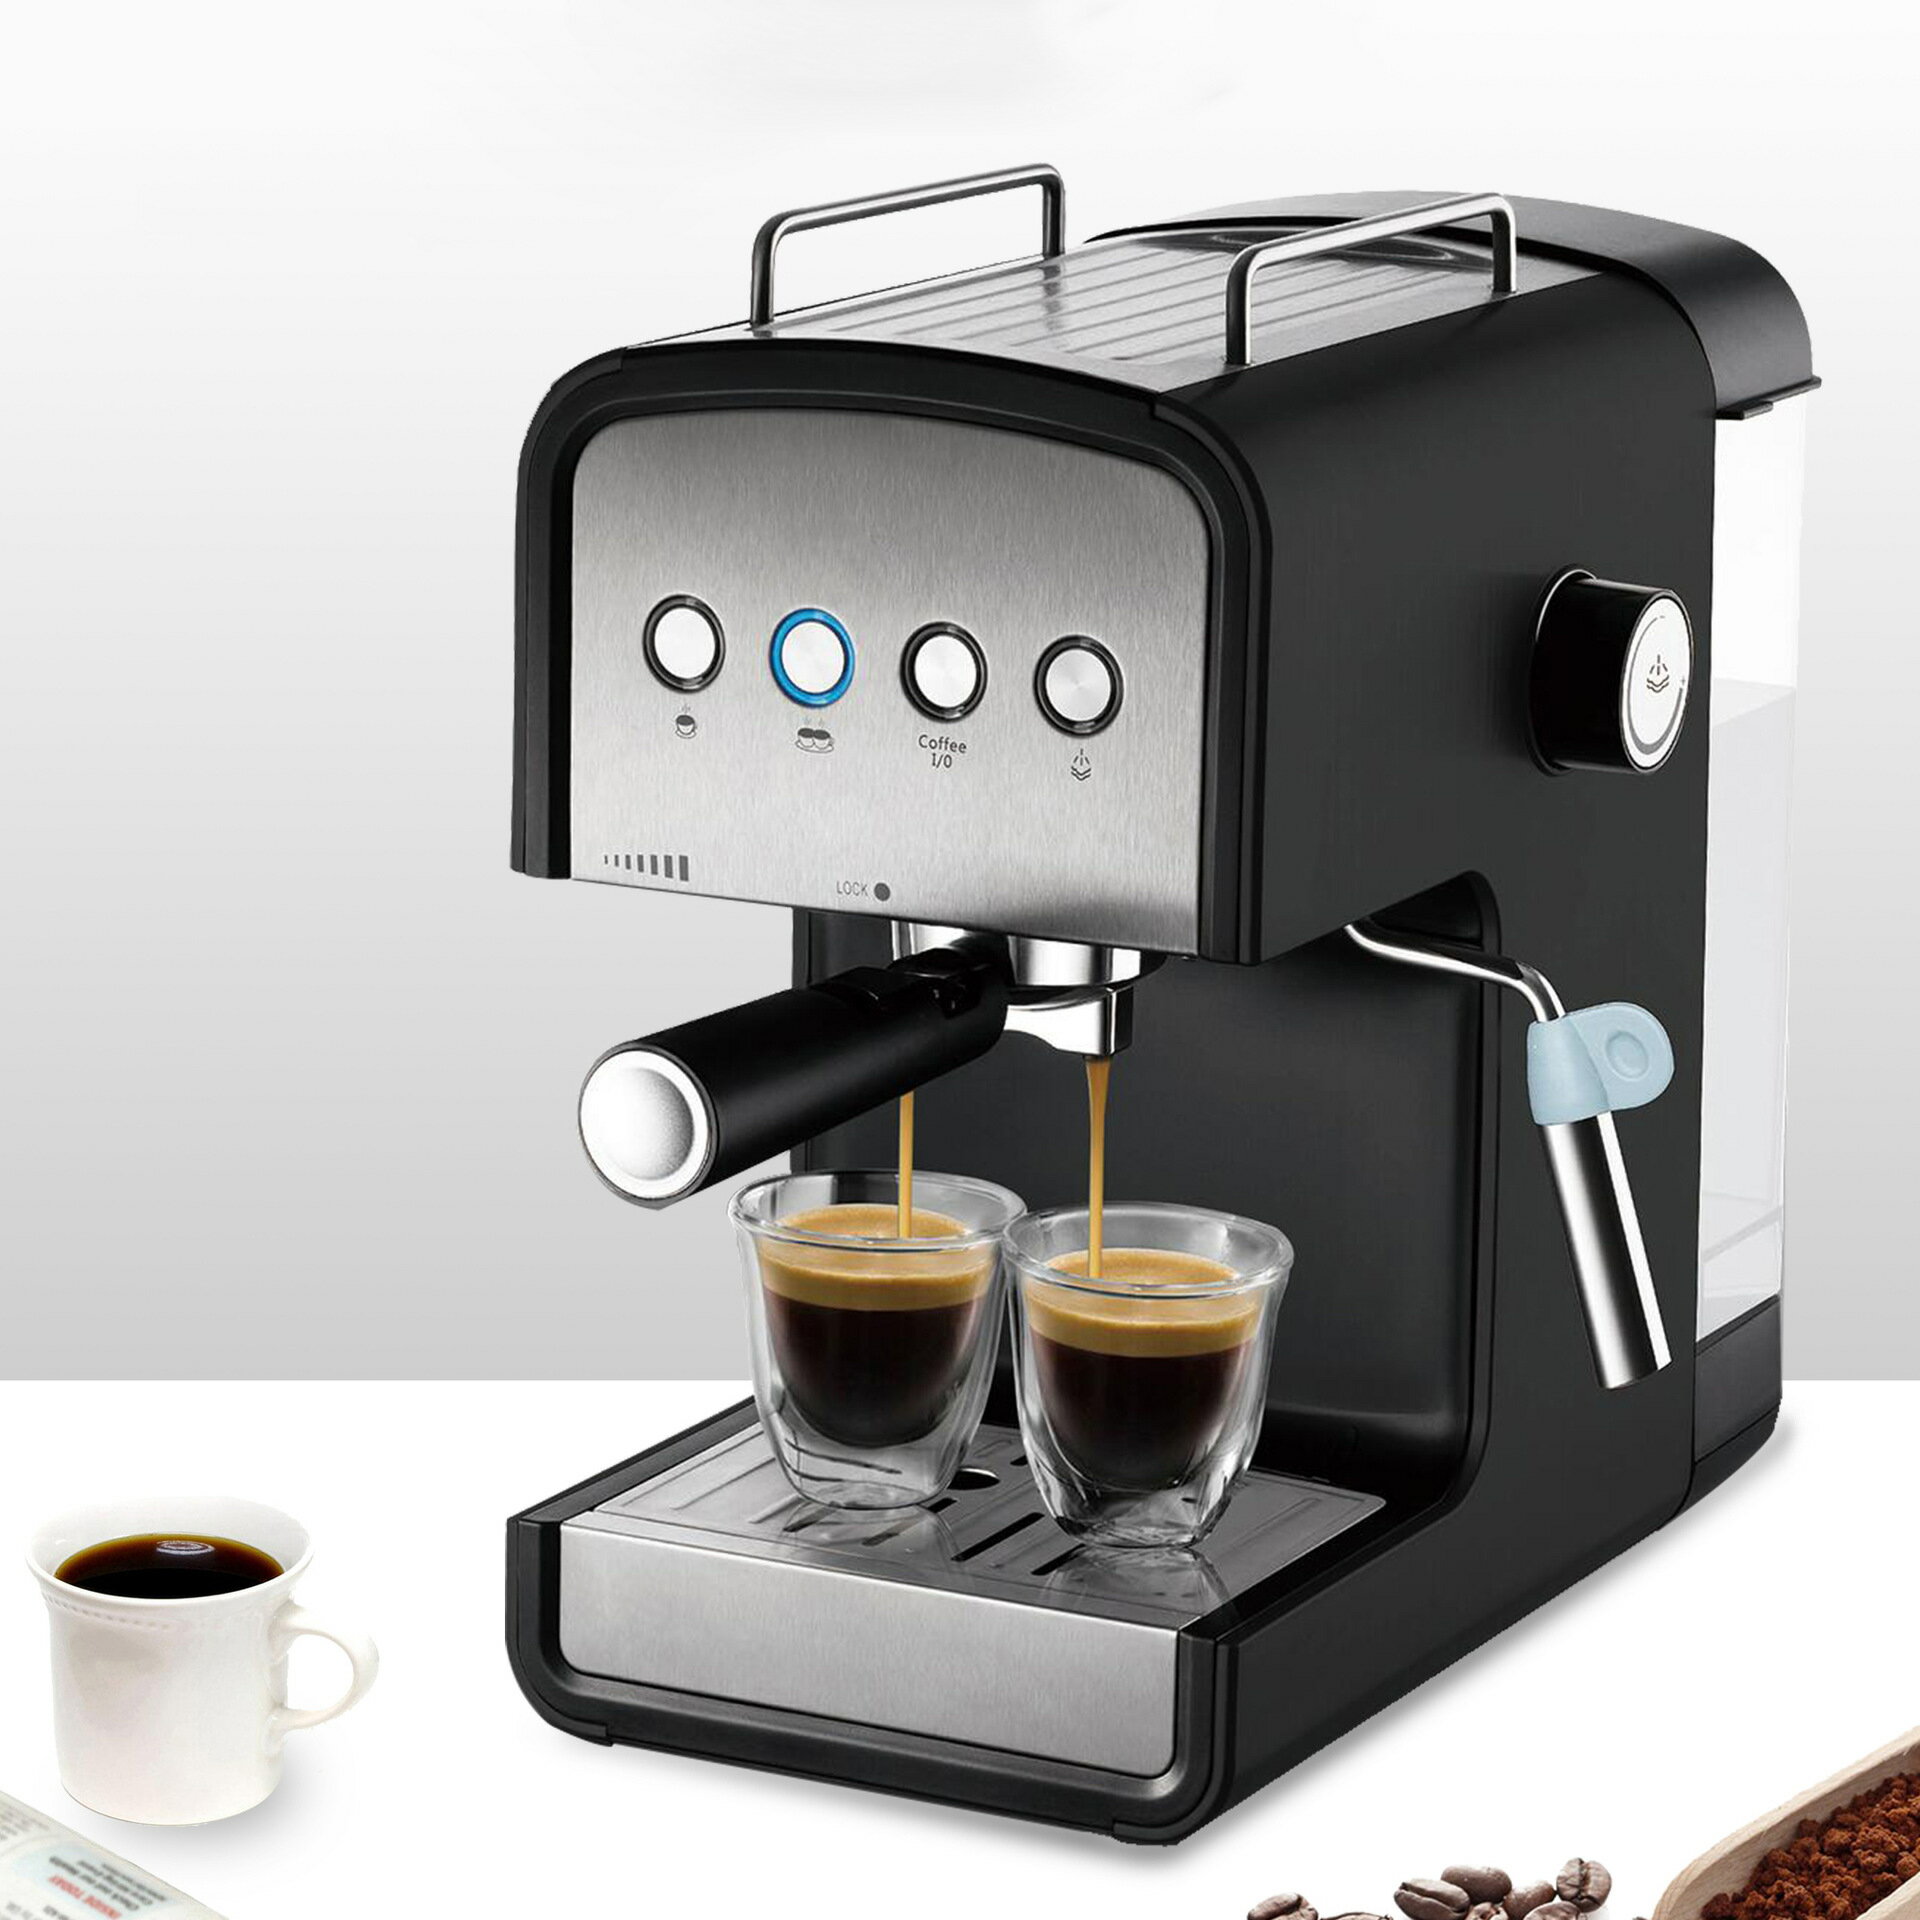 咖啡機 110v美規咖啡機 2杯美式咖啡機 煮咖啡 打奶泡 雙十一熱購 交換禮物全館免運